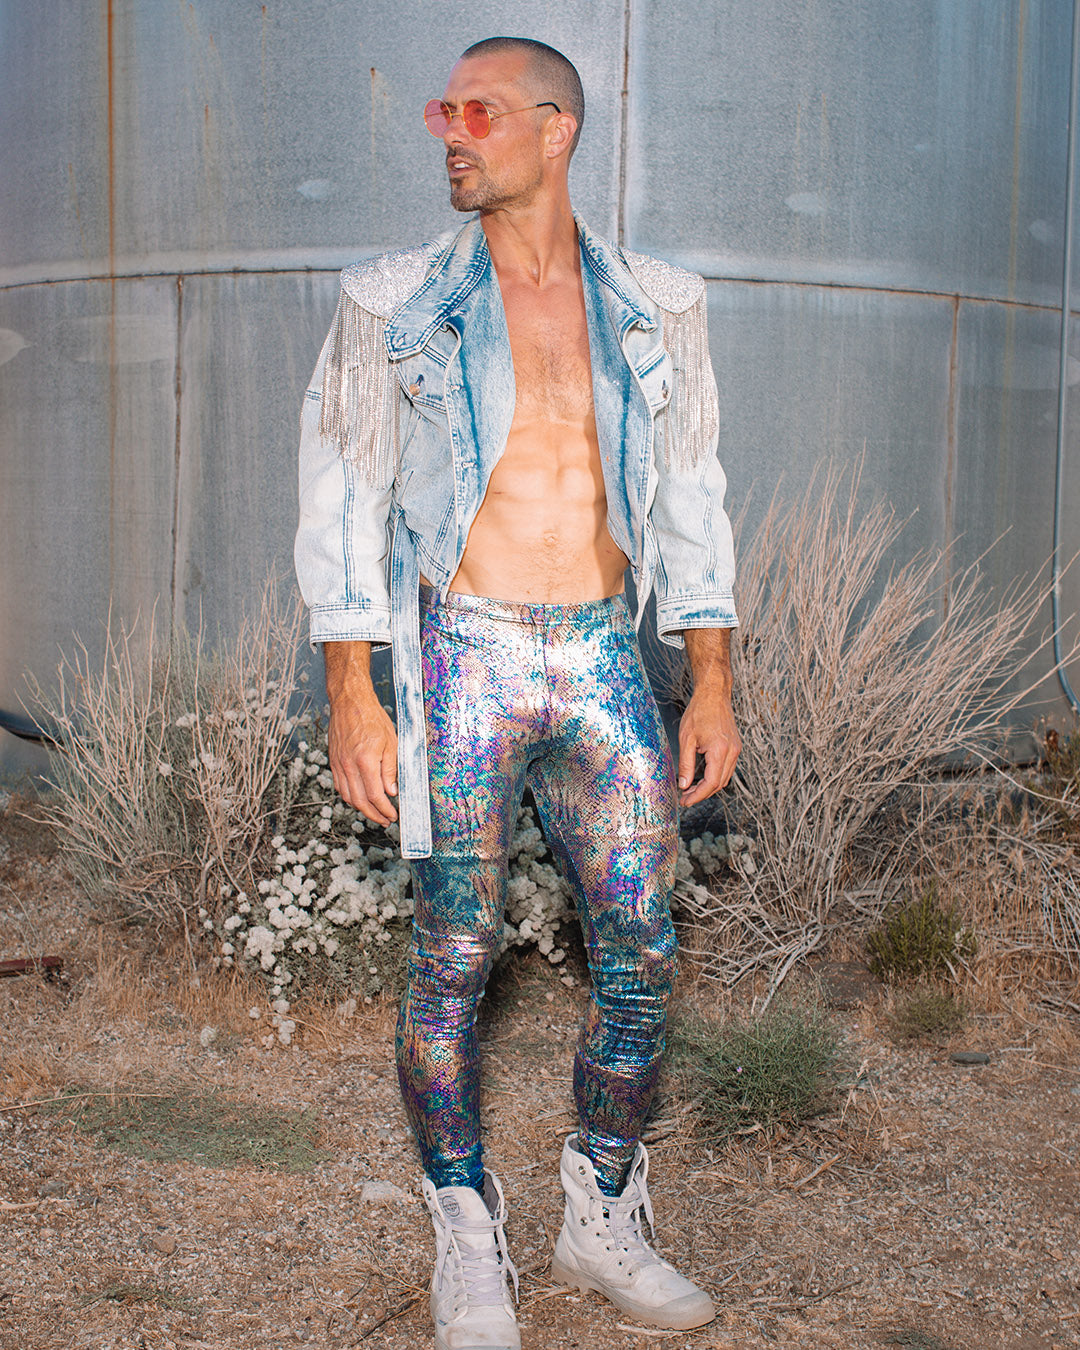 Holographic Rainbow Snakeskin Foil Leggings | Men's